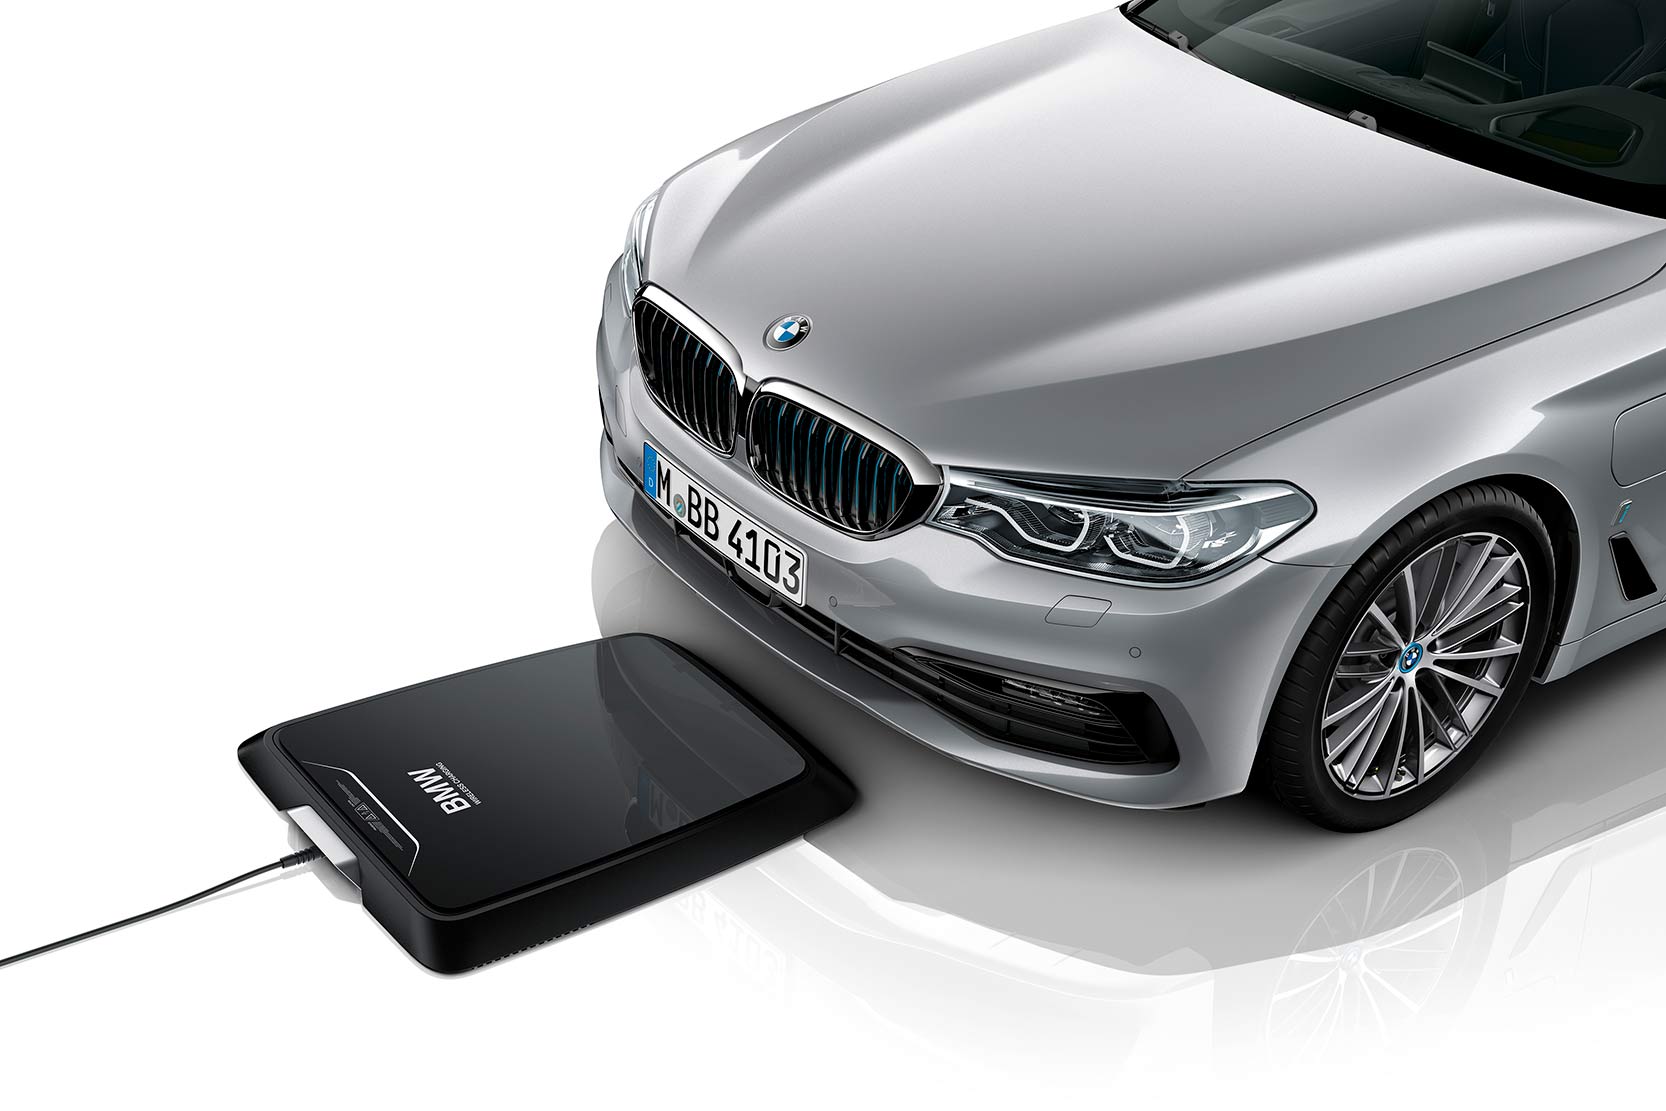 Image principale de l'actu: Bmw propose la premiere recharge par induction pour un vehicule electrique 